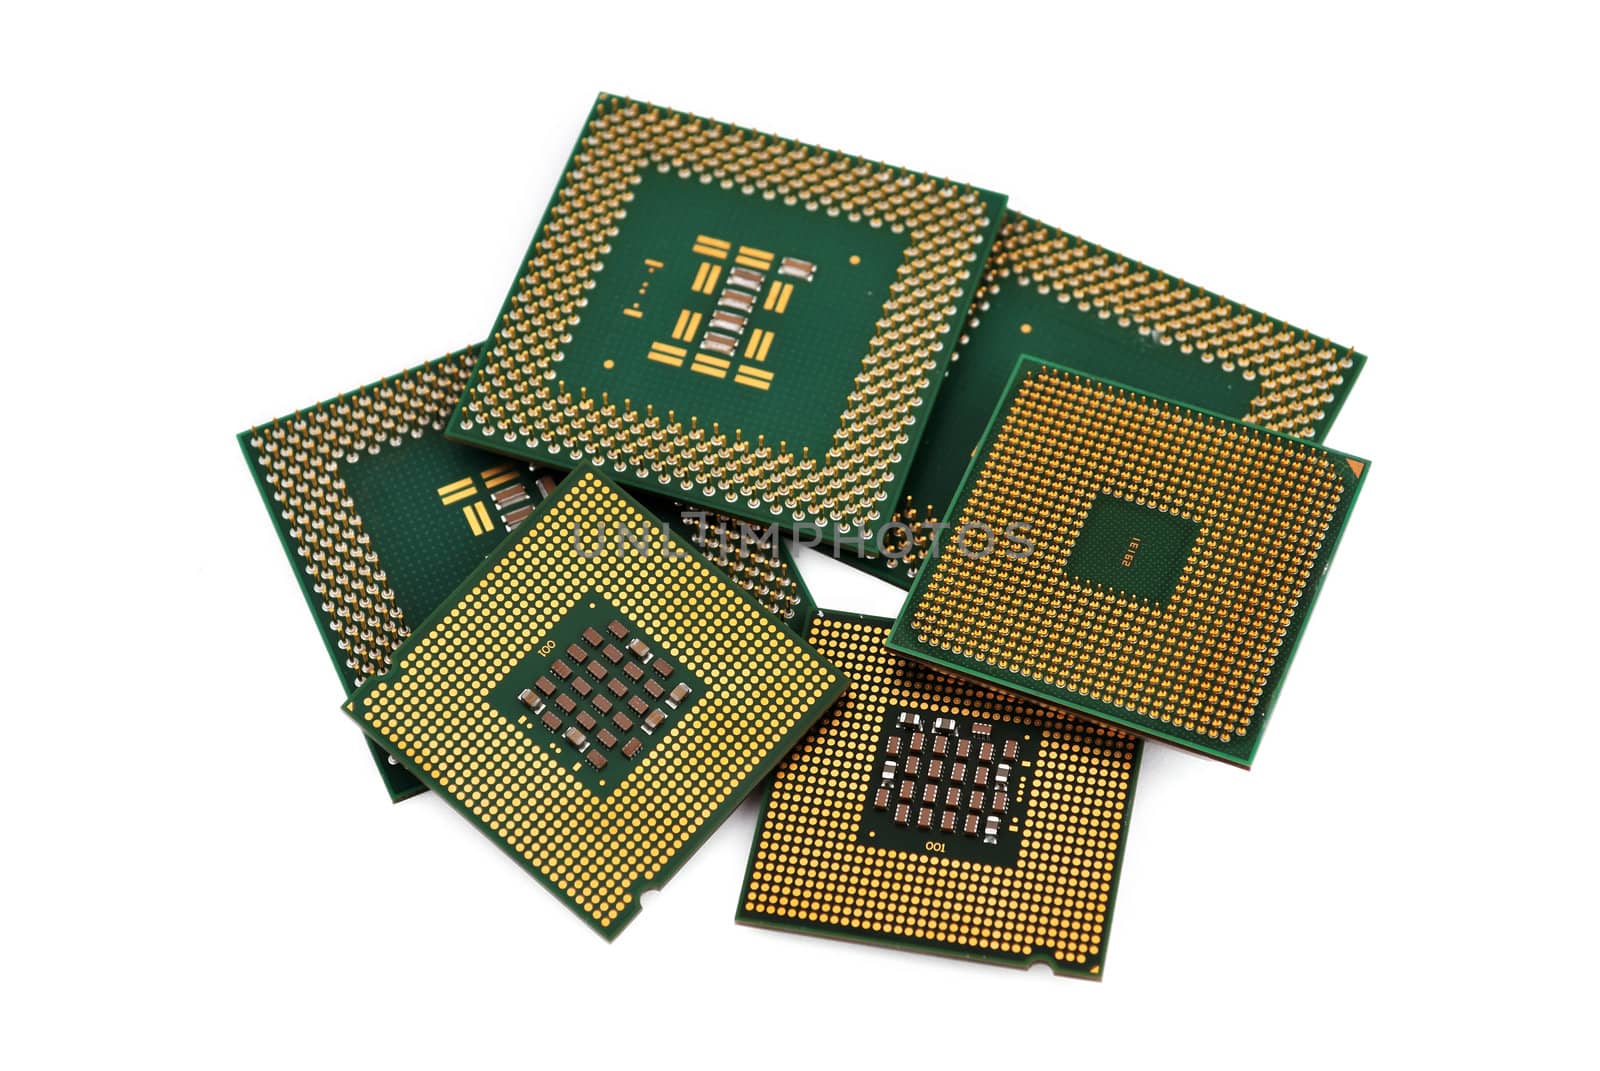 six CPU by vetkit